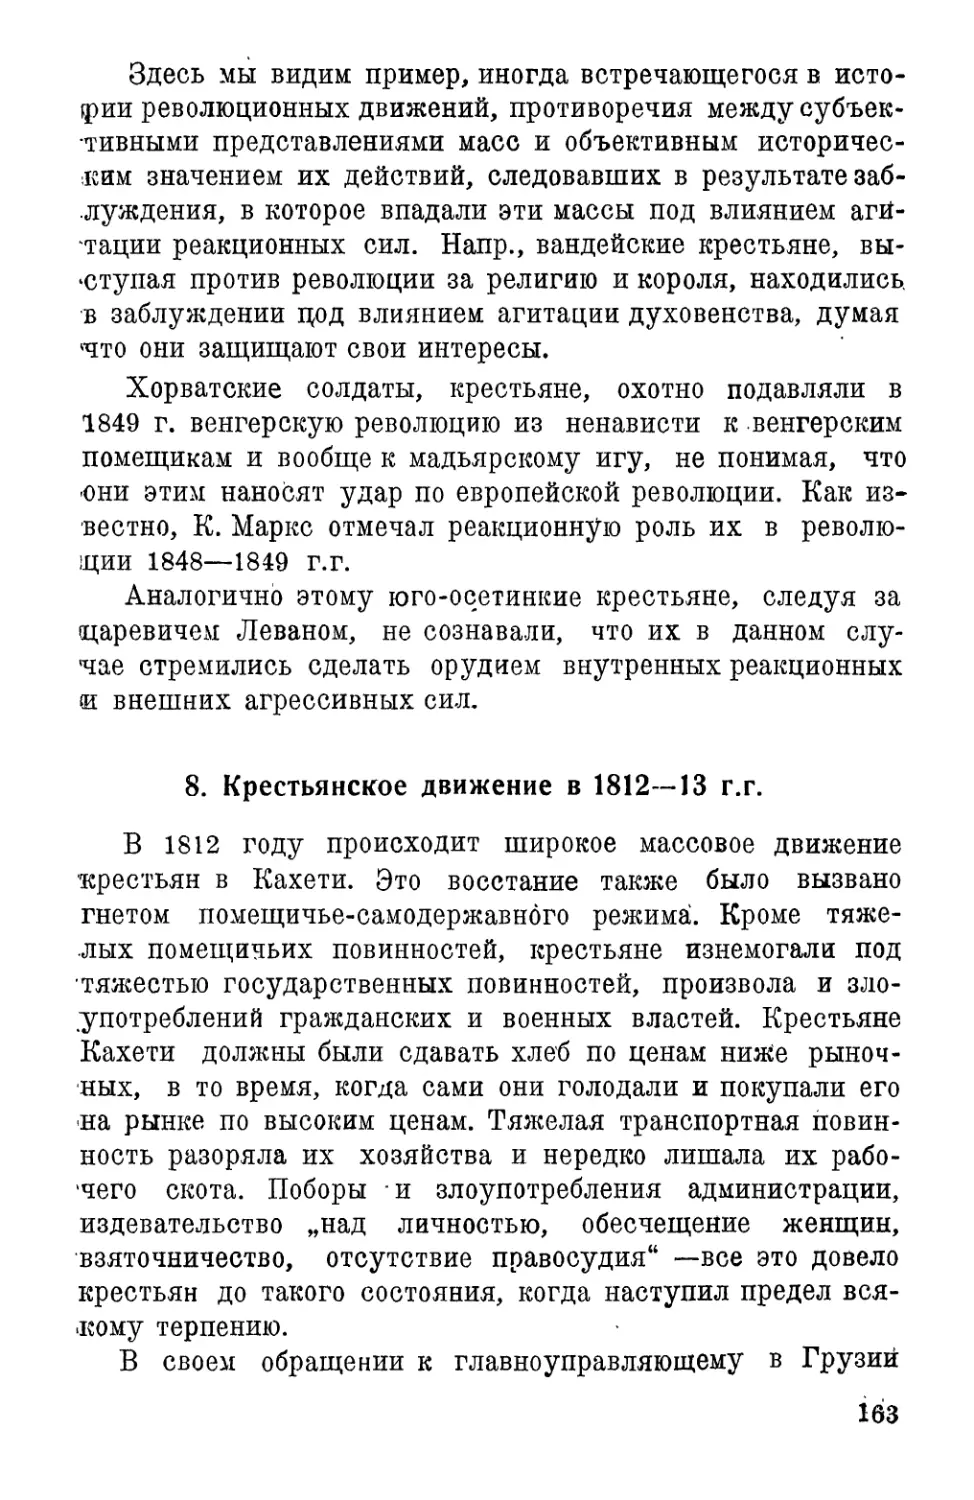 7. Крестьянское движение в 1812–1813 г.г.